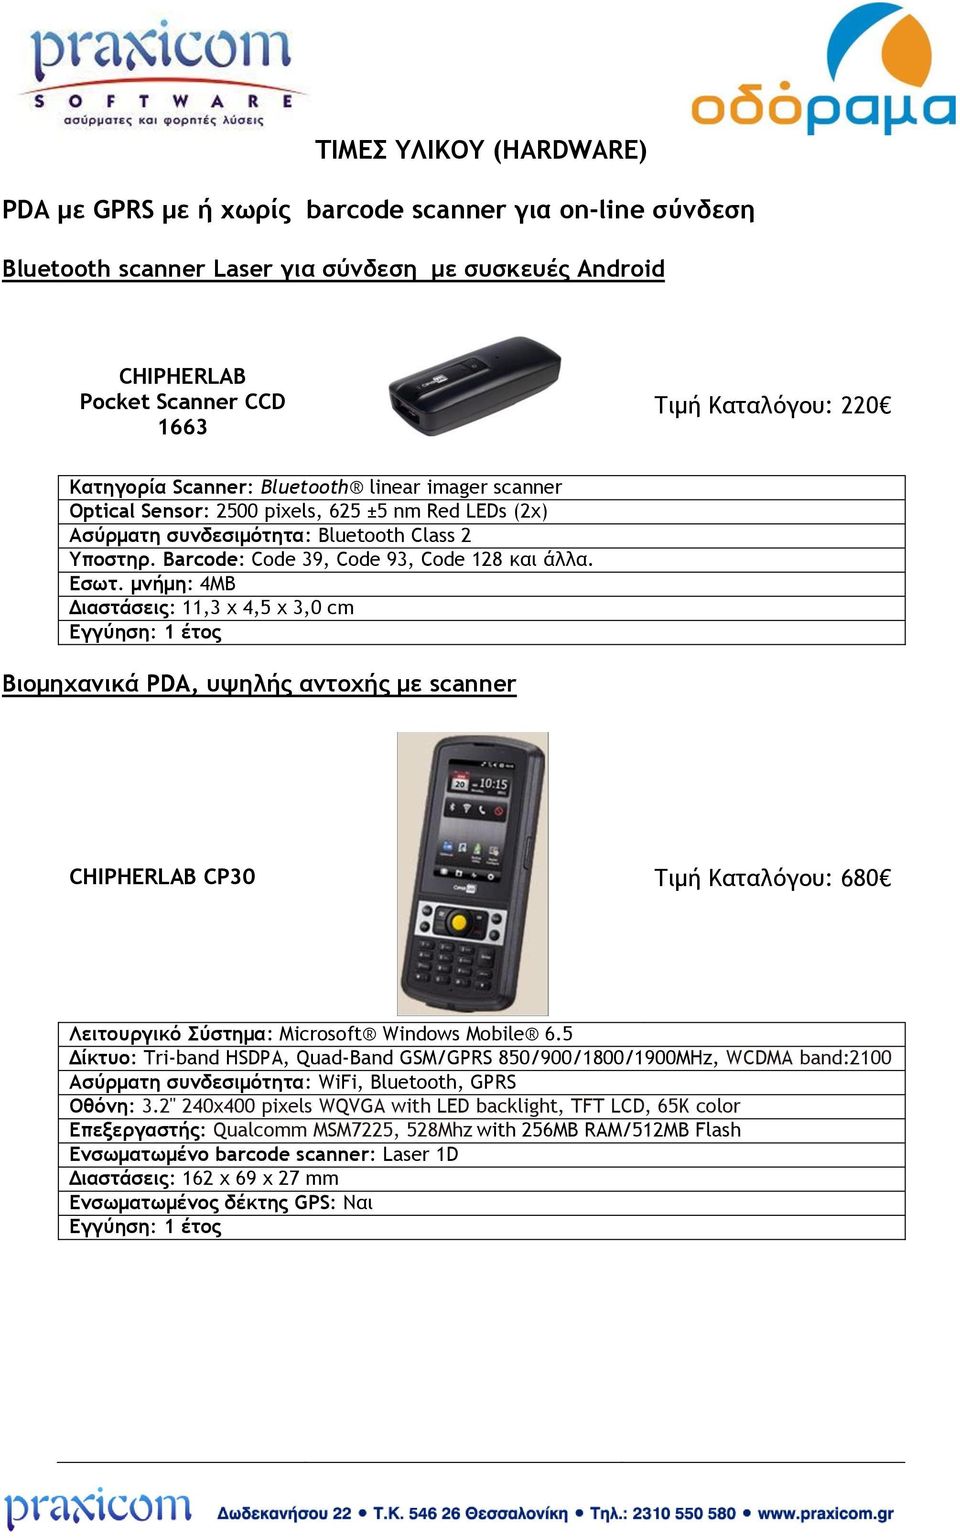 Εσωτ. μνήμη: 4MB Διαστάσεις: 11,3 x 4,5 x 3,0 cm Βιομηχανικά PDA, υψηλής αντοχής με scanner CHIPHERLAB CP30 Τιμή Καταλόγου: 680 Λειτουργικό Σύστημα: Microsoft Windows Mobile 6.